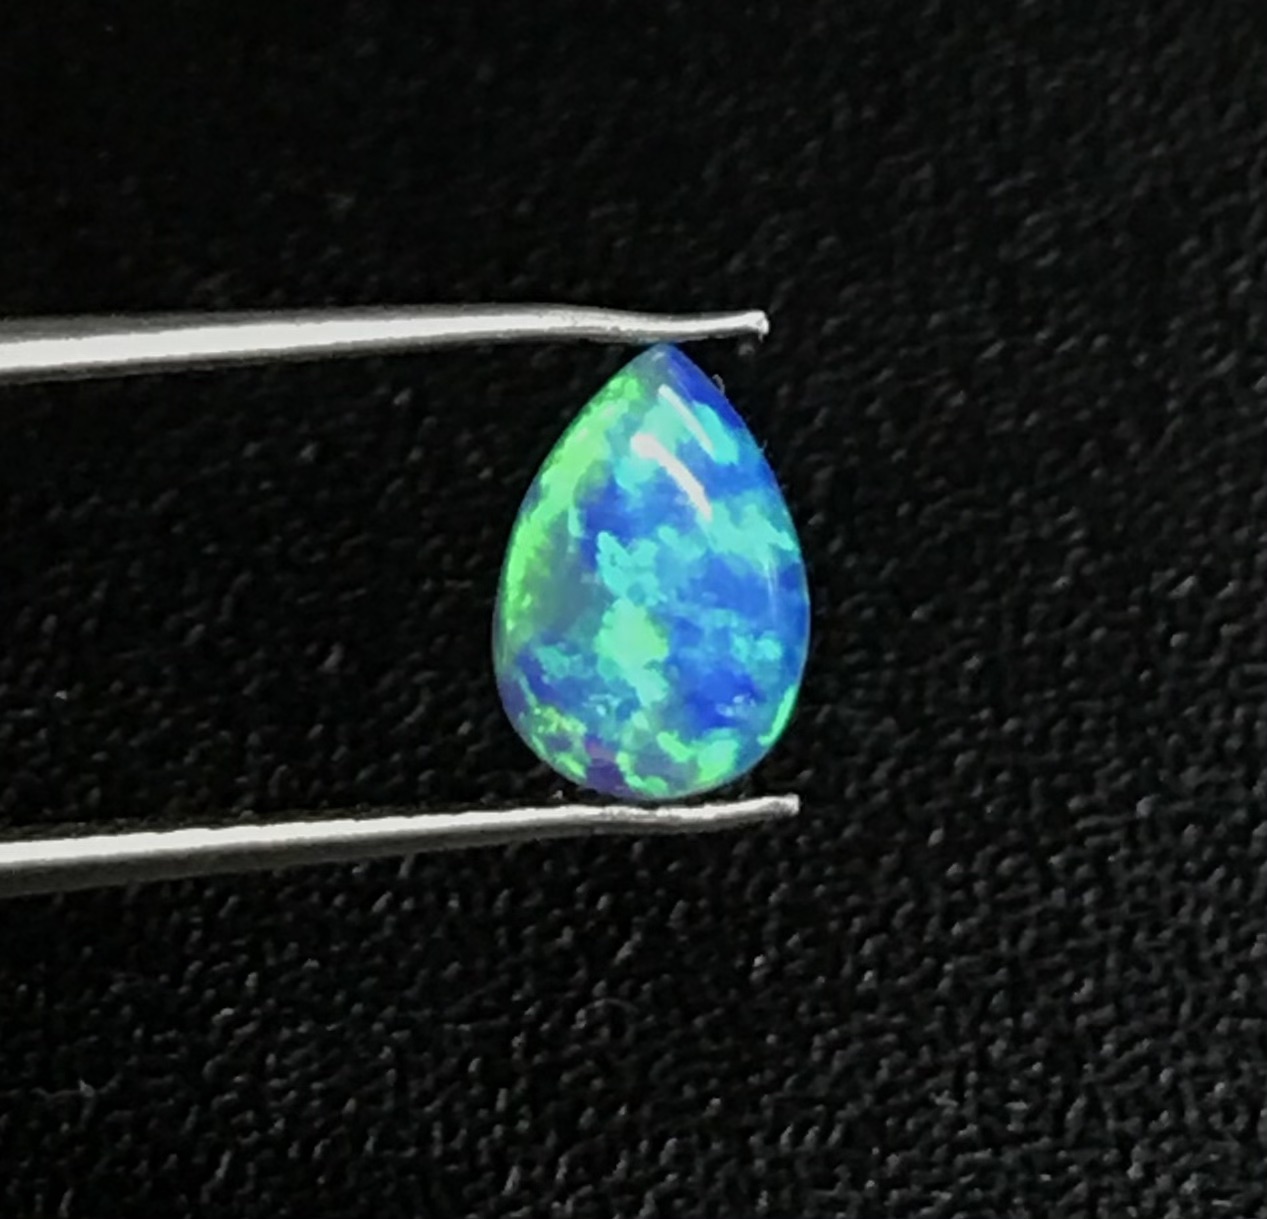 โอปอลสังเคราะห์สีน้ำเงินทรงลูกแพร์ขนาด 7x5 มม 7x5 mm pear shape synthetic blue Opal